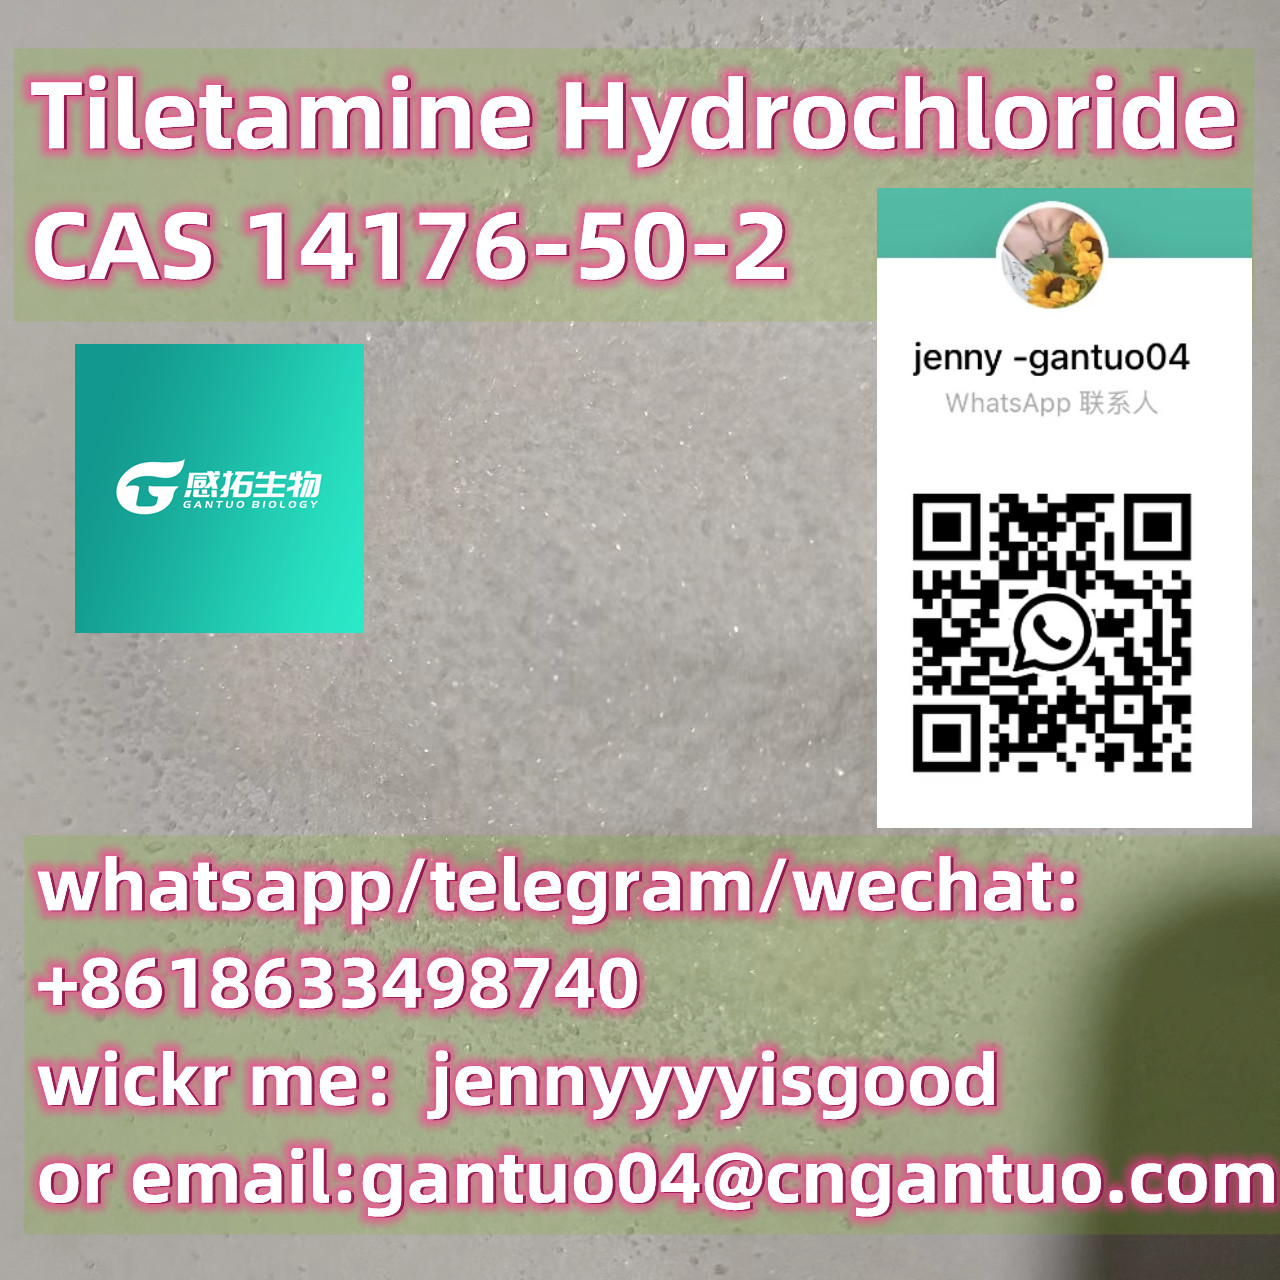 Tiletamine Hydrochloride CAS 14176-50-2 hot sale